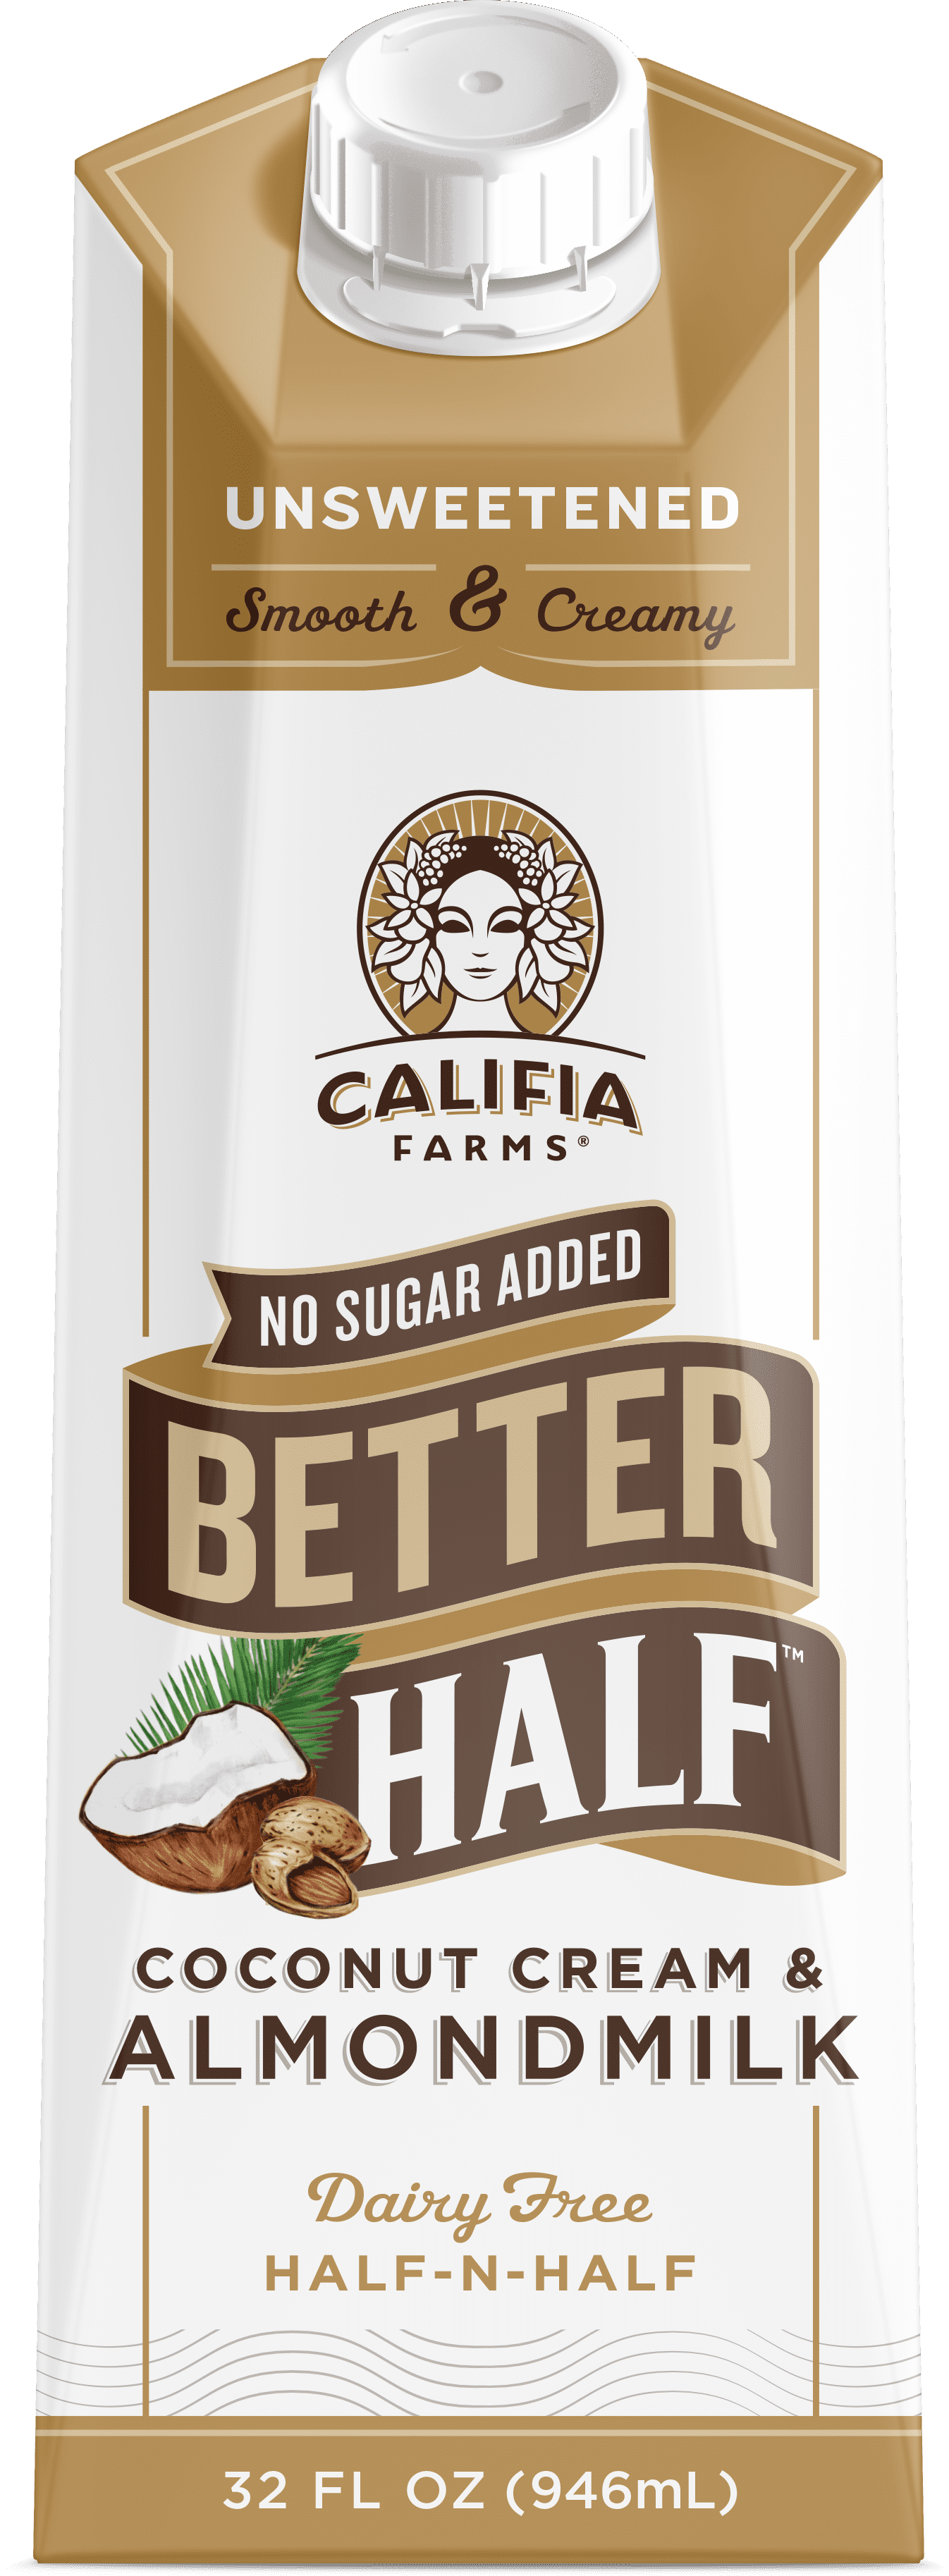 Califia Farms Unsweetened Better Half Coffee Creamer, 32 Fl Oz Coconut Crea...